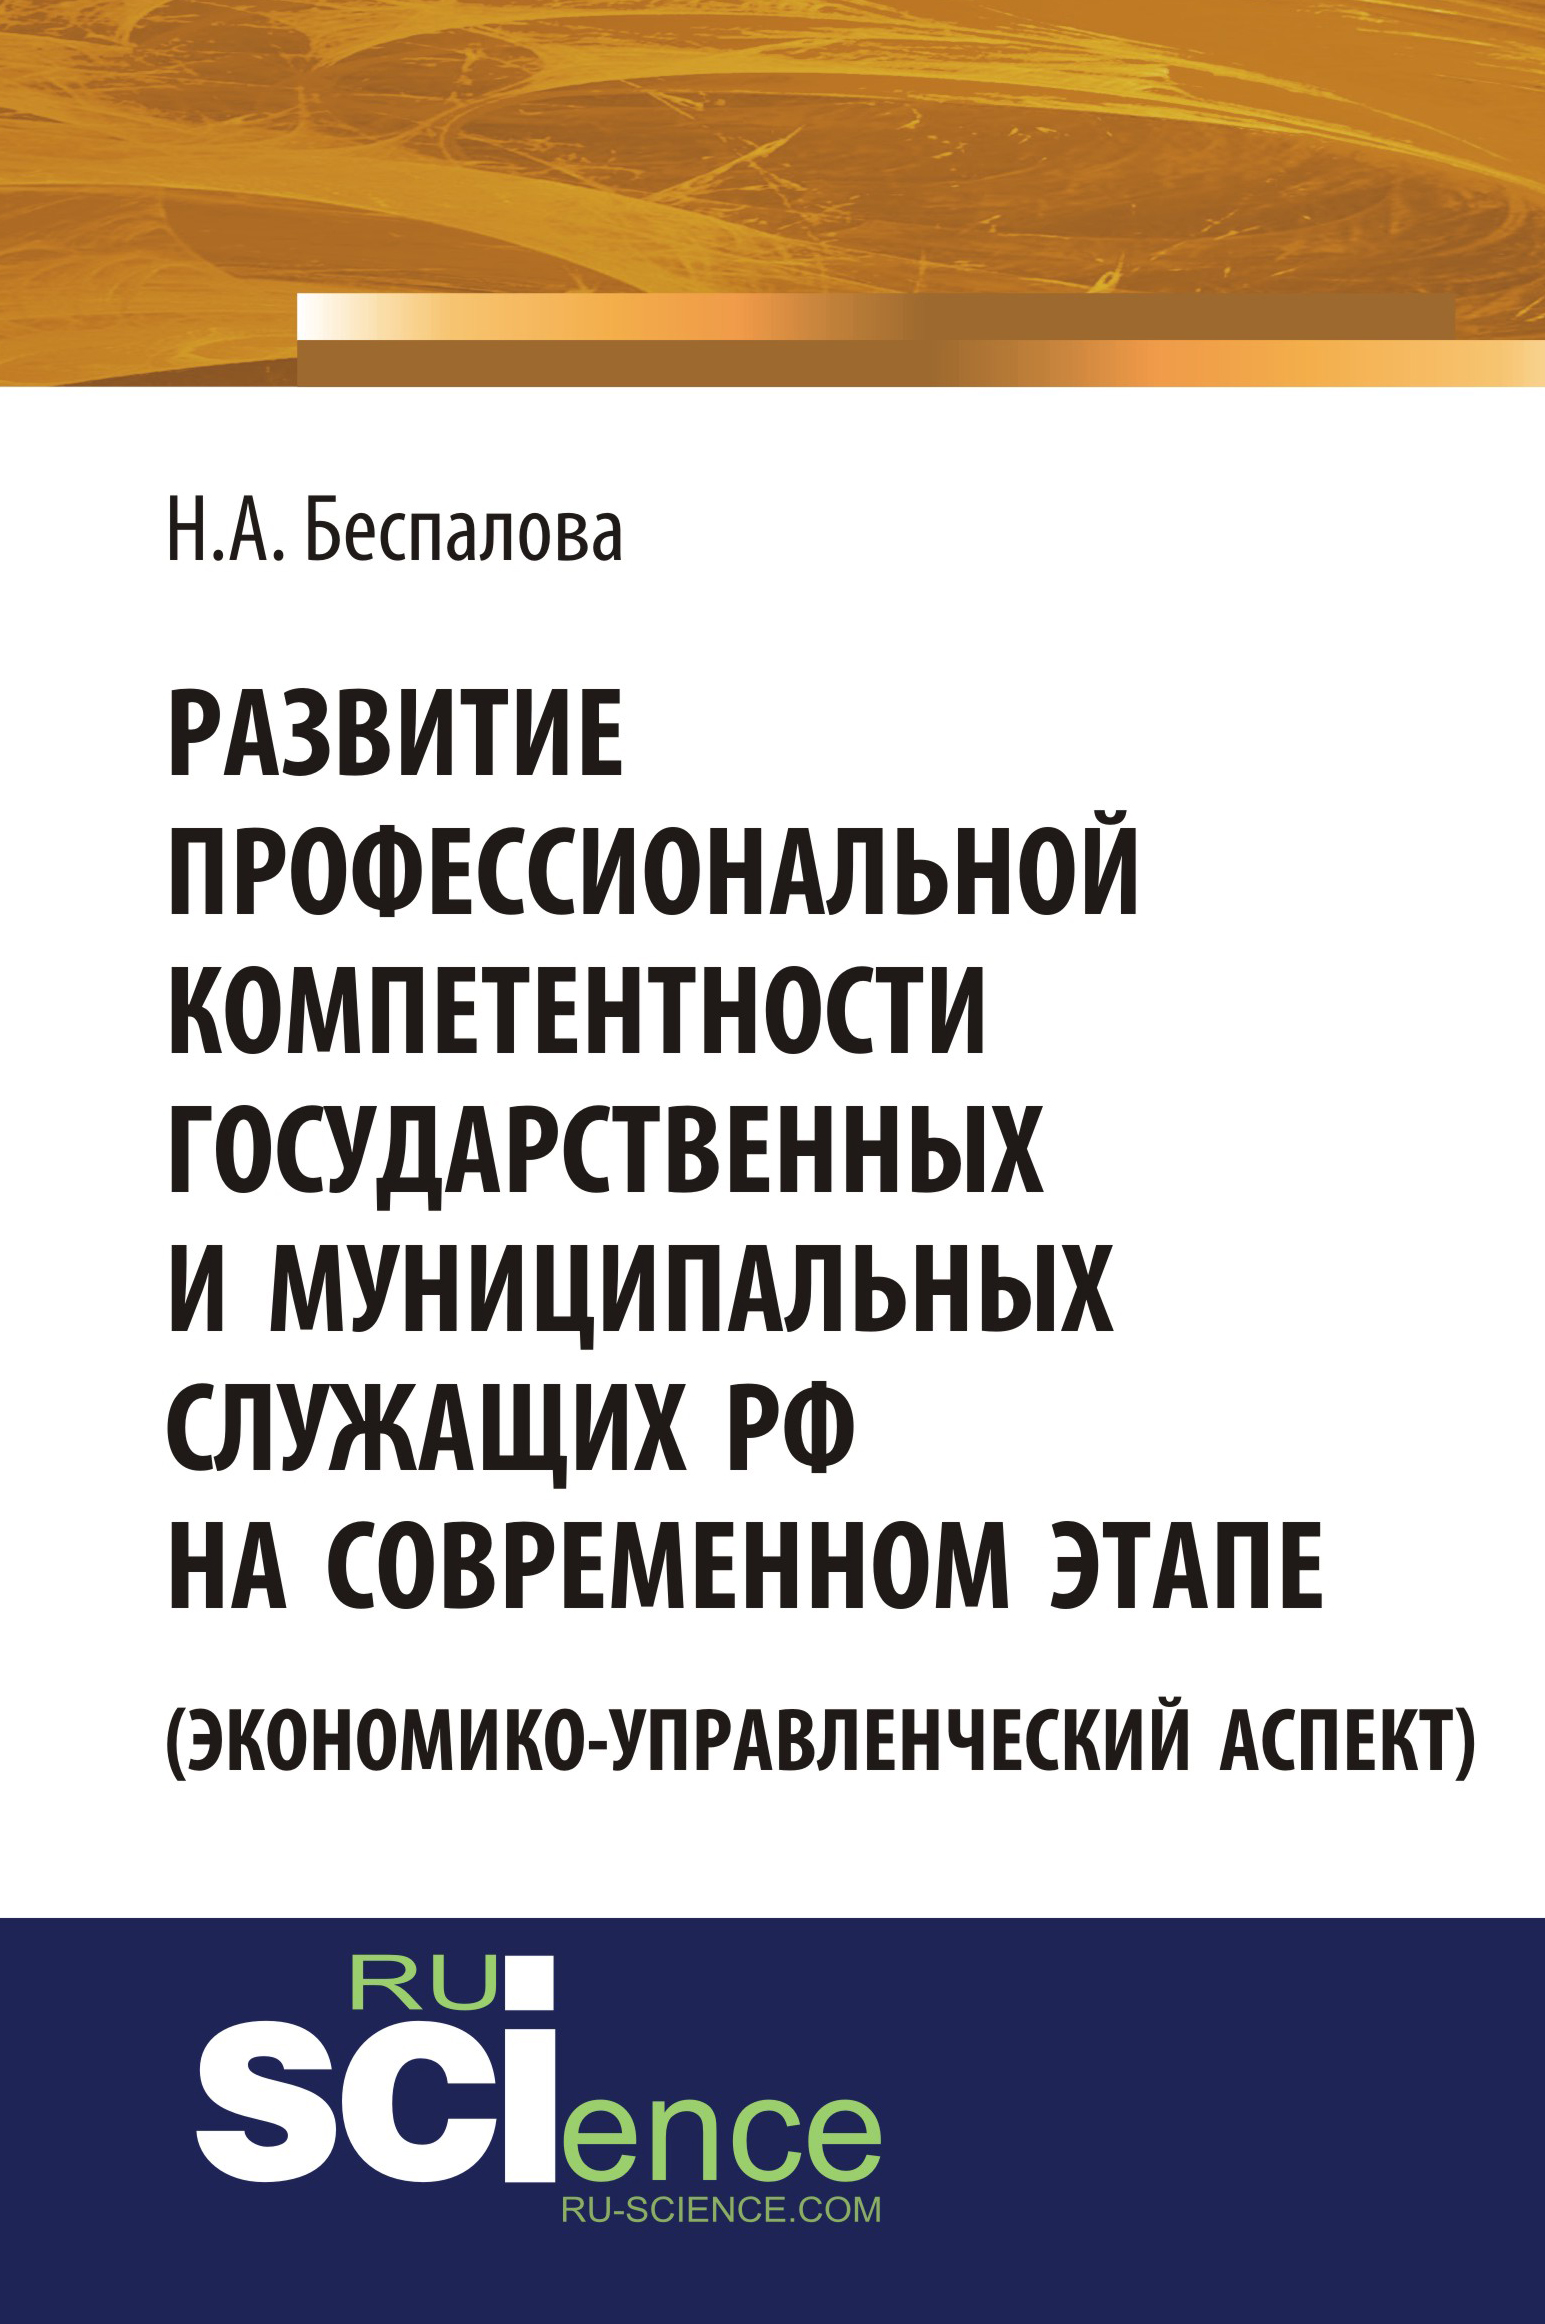 Развитие профессиональной компетентности государственных и муниципальных служащих РФ на современном этапе